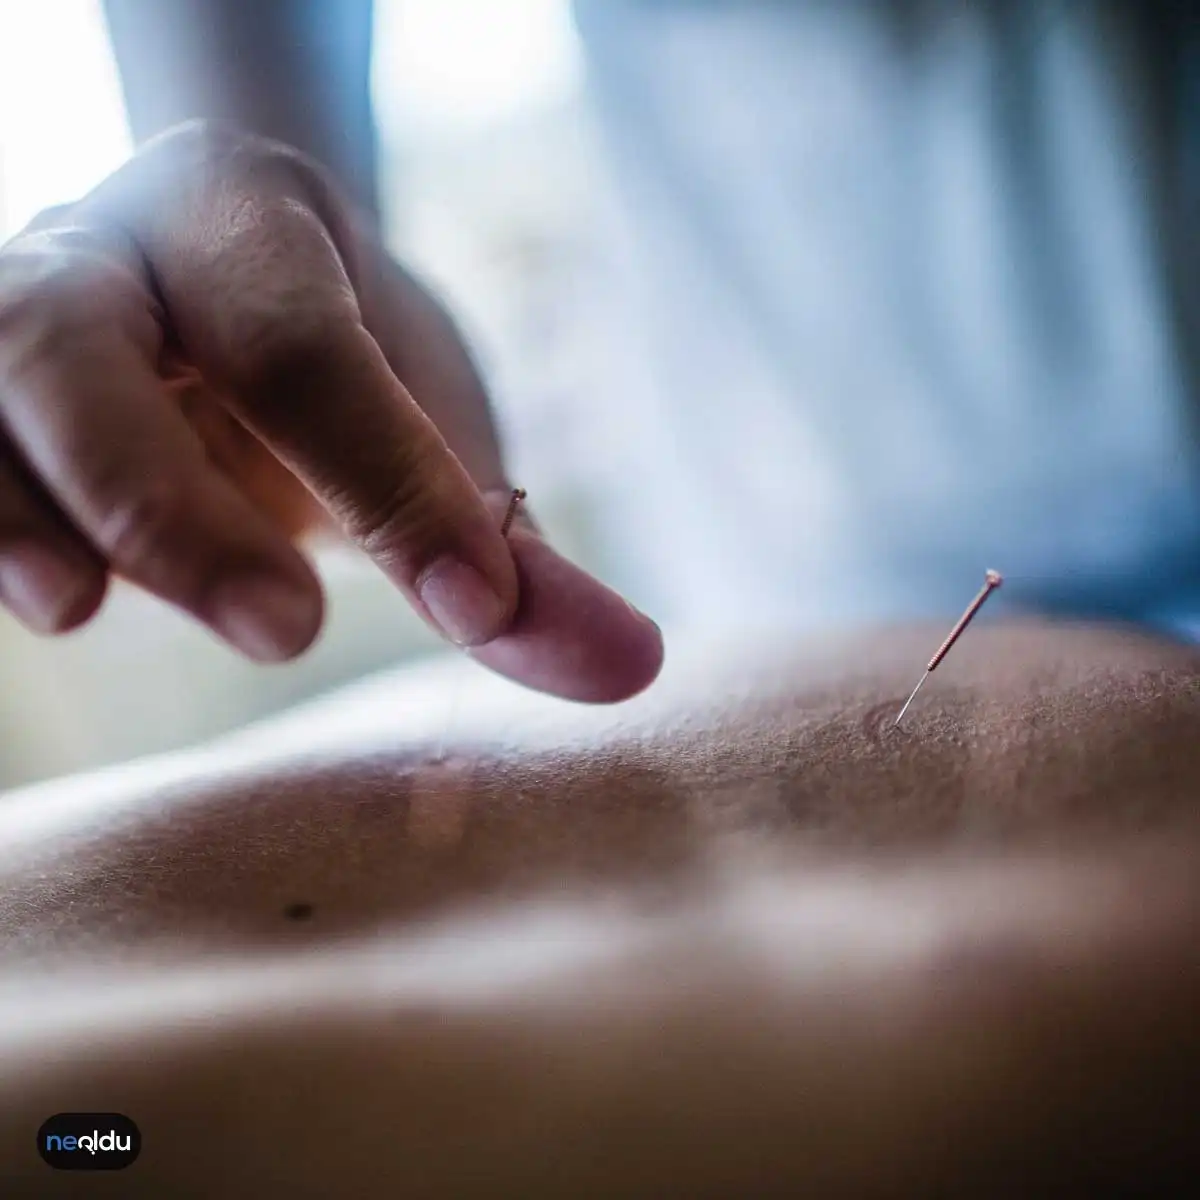 Akupunktur Nedir?